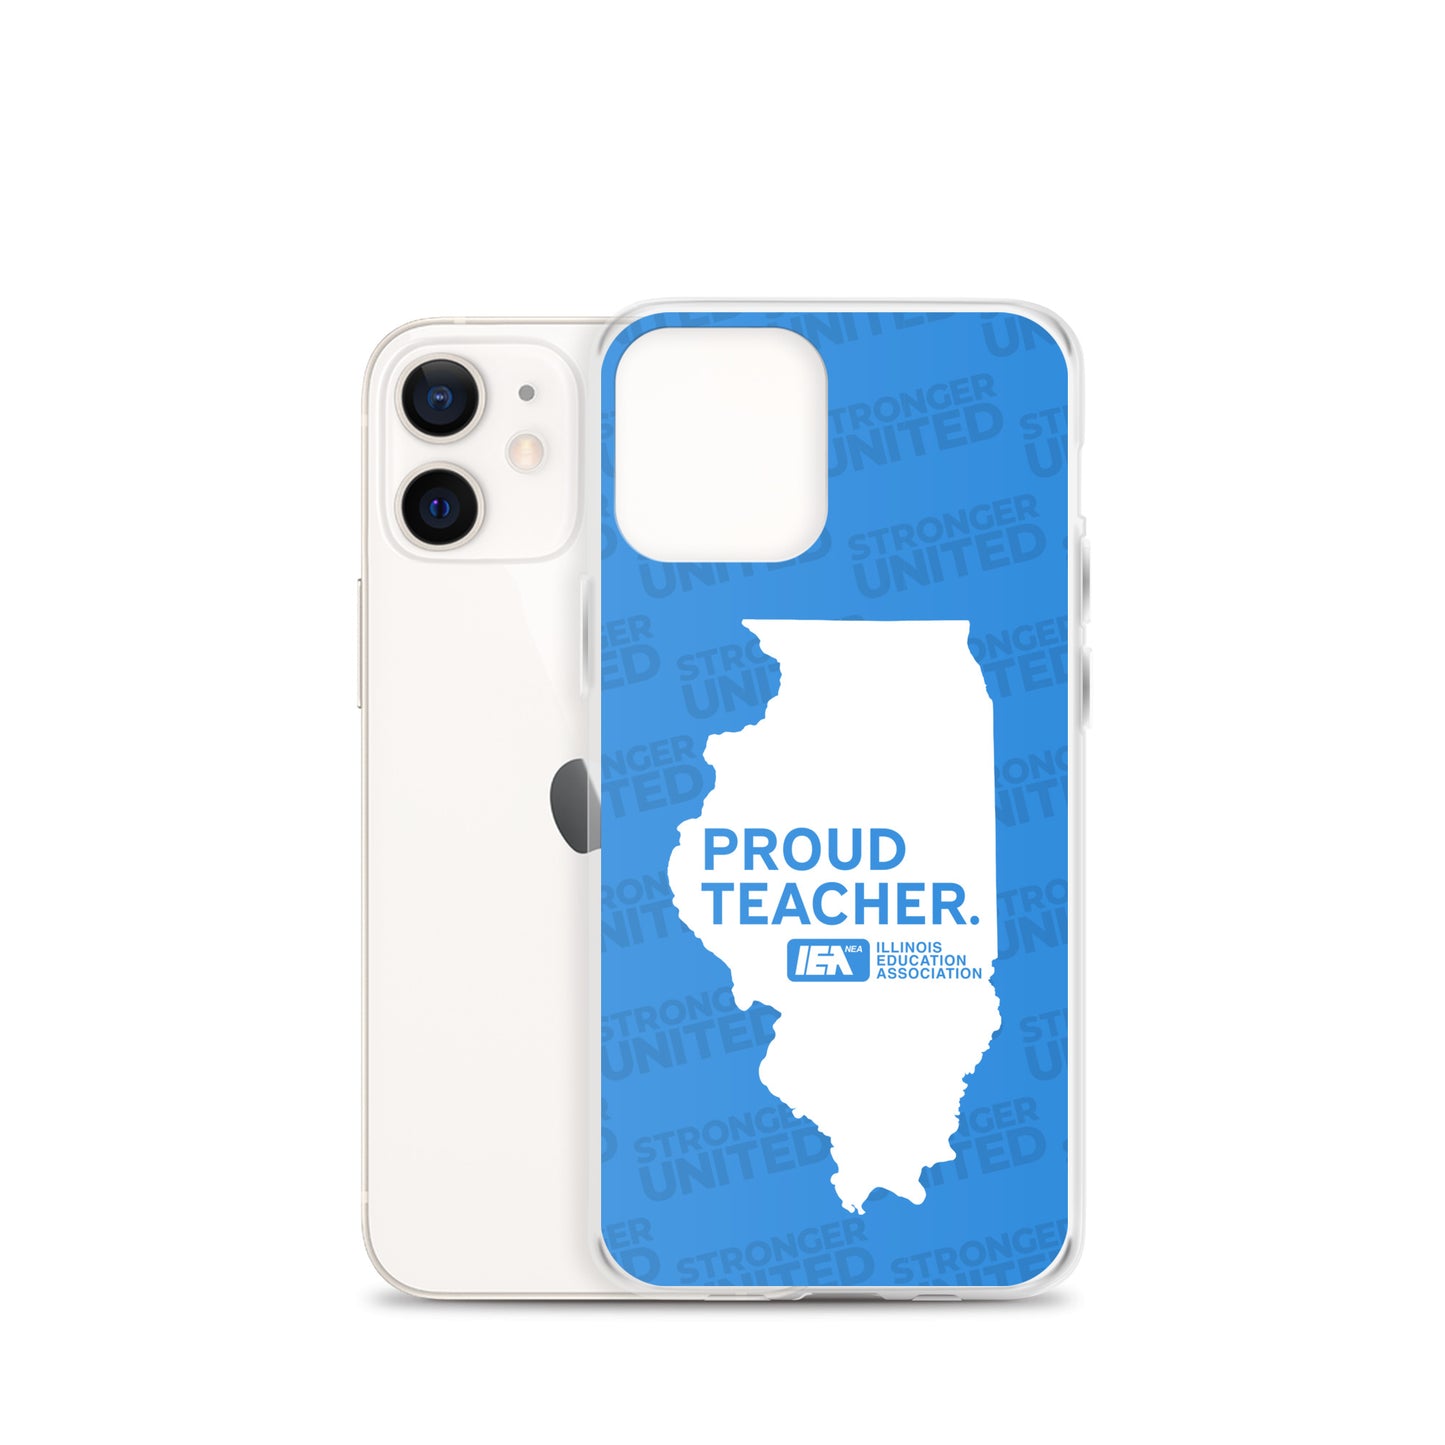 Proud Teacher iPhone Case